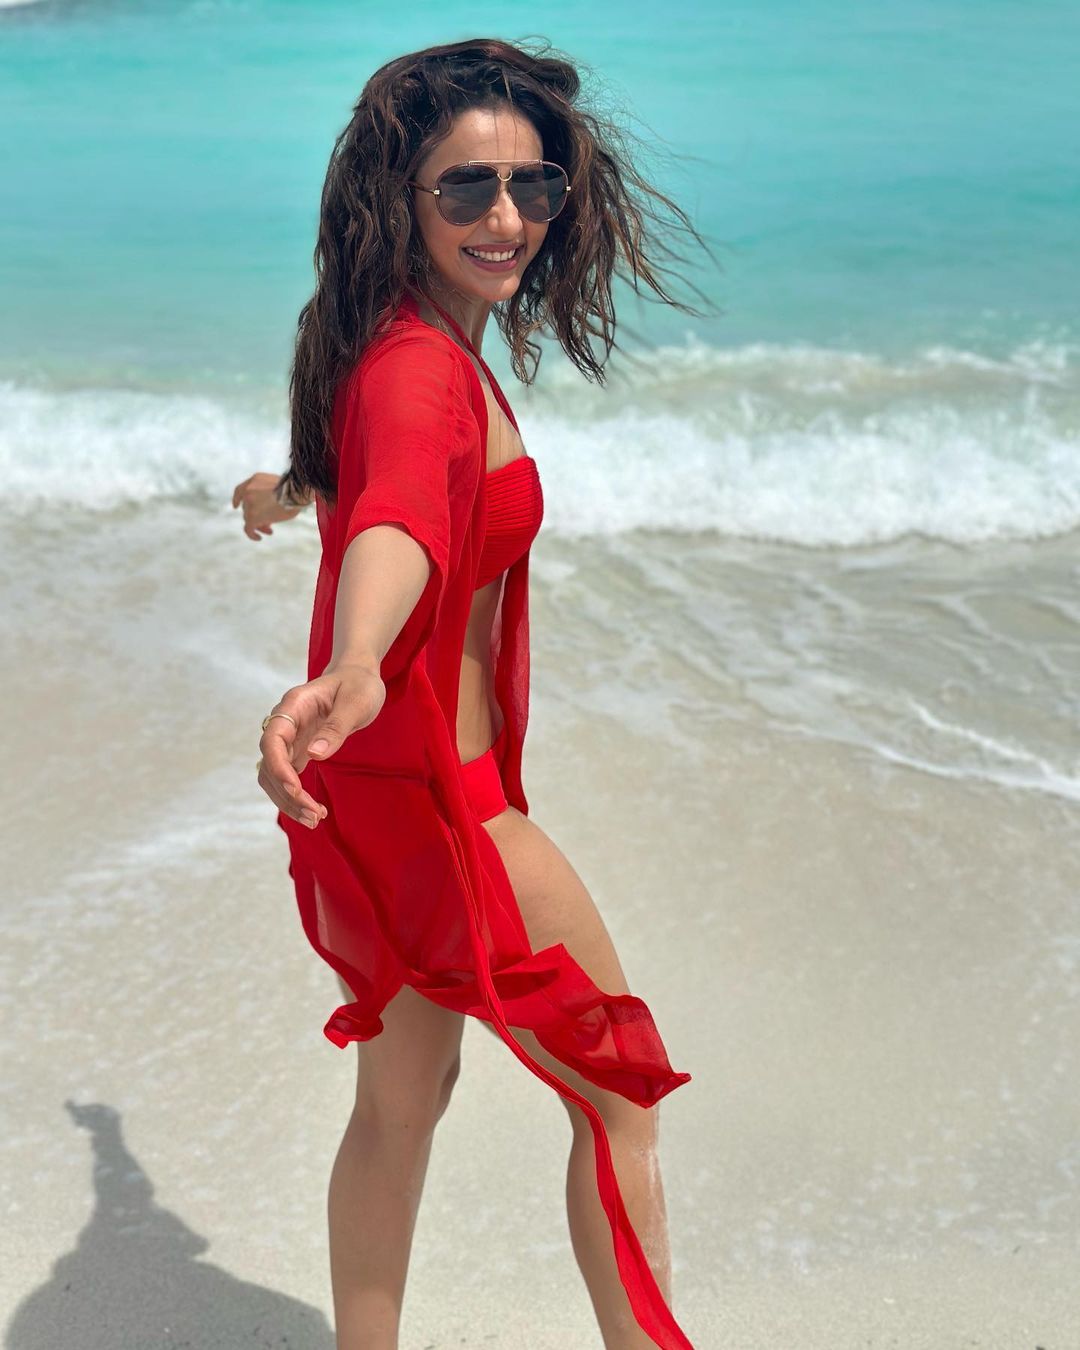 rakul-preeth-singh-glamours-looks-in-hot-red-bikini